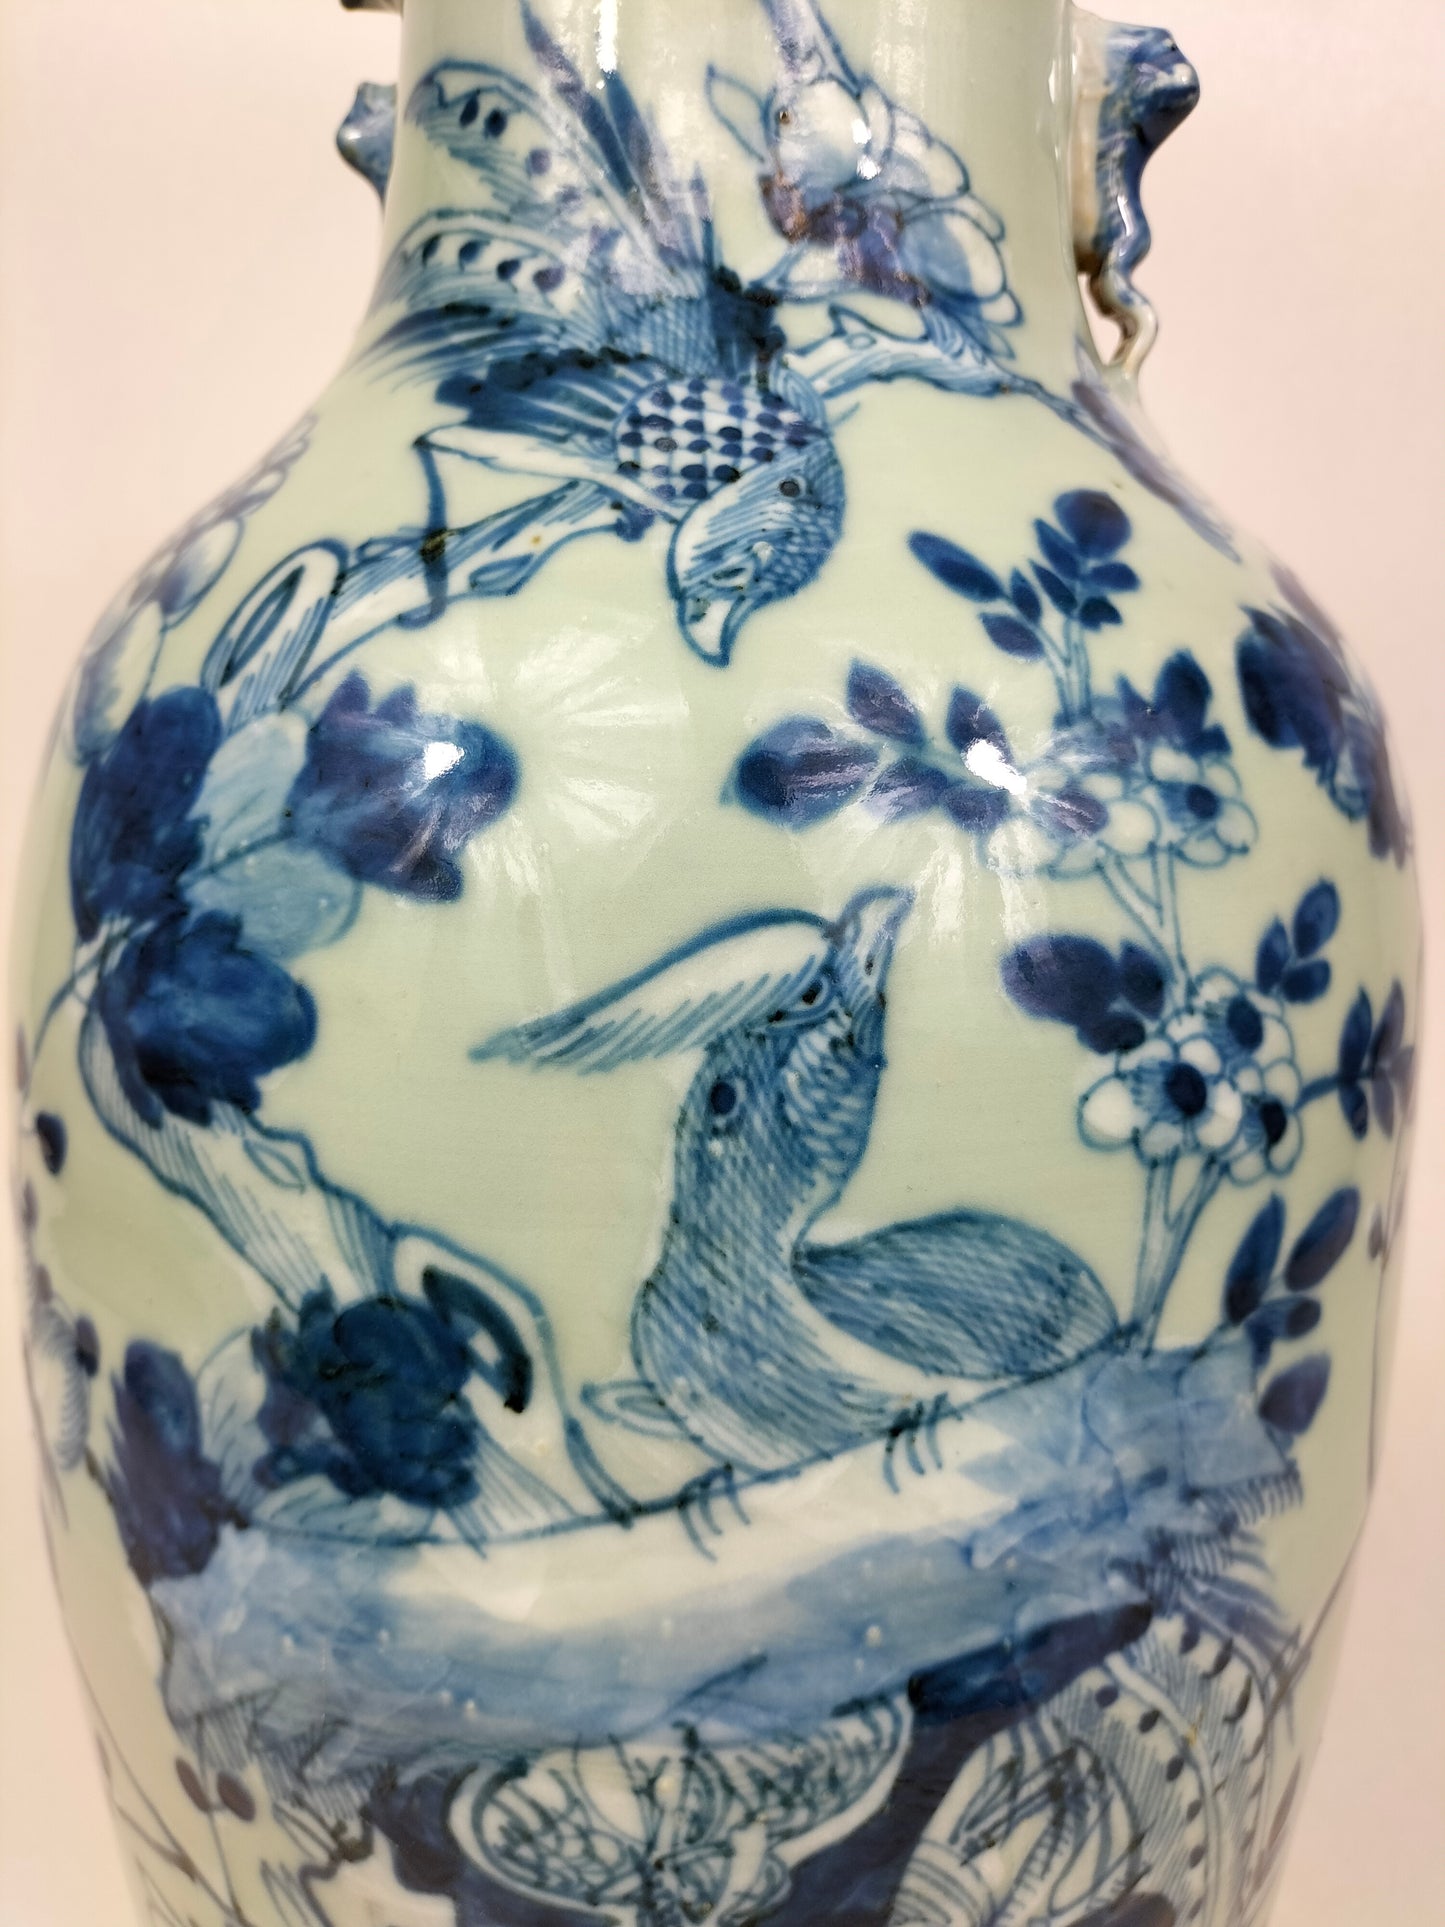 Grande vaso antigo de celadon chinês decorado com pássaros e flores // Dinastia Qing - século XIX